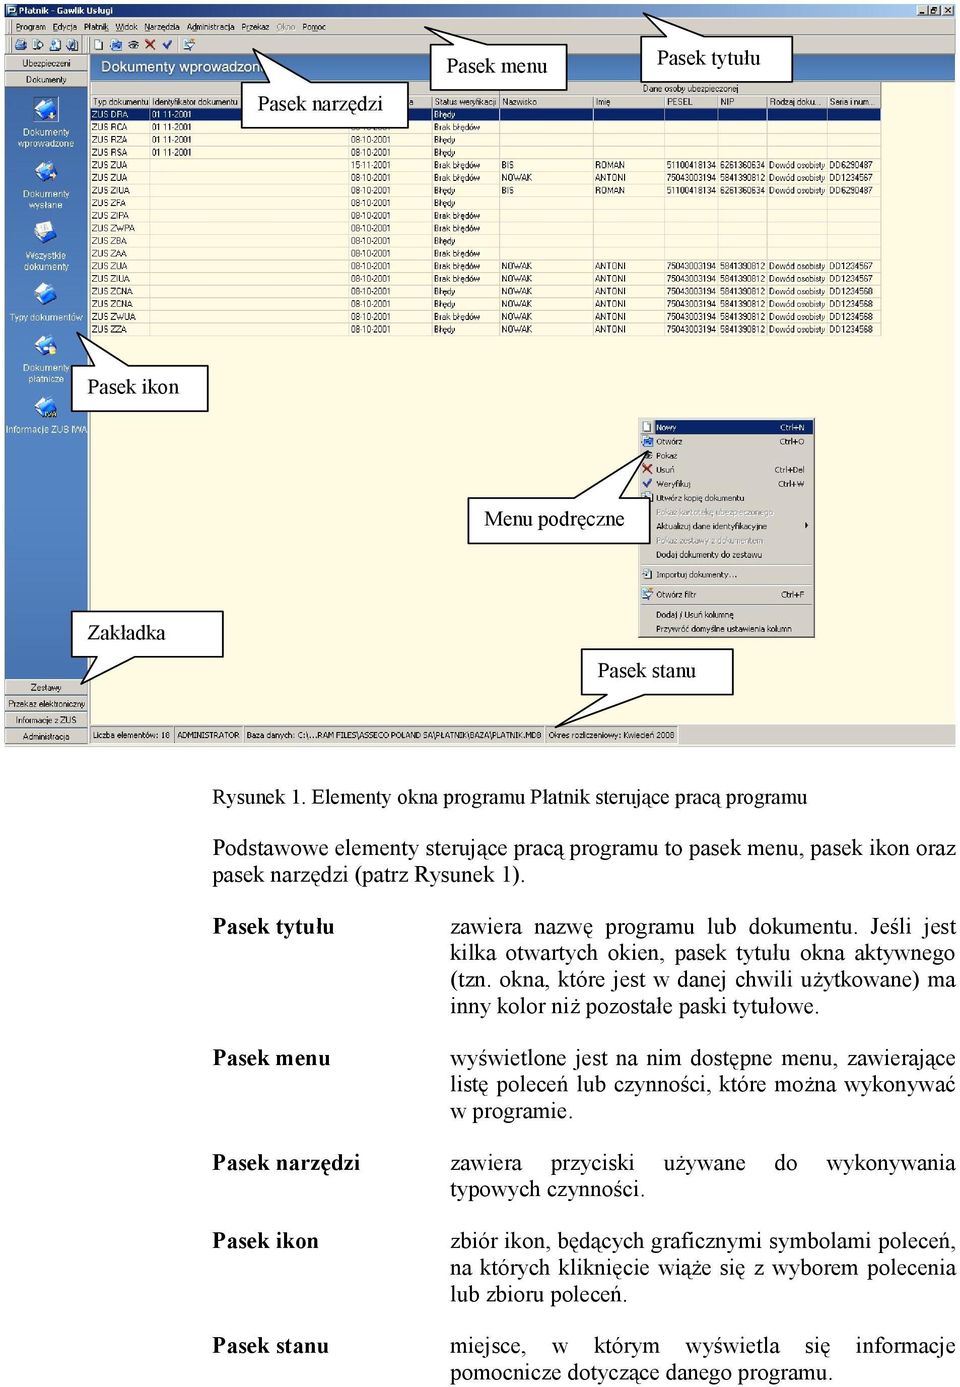 Pasek tytuu Pasek menu zawiera nazw programu lub dokumentu. Je6li jest kilka otwartych okien, pasek tytuu okna aktywnego (tzn.